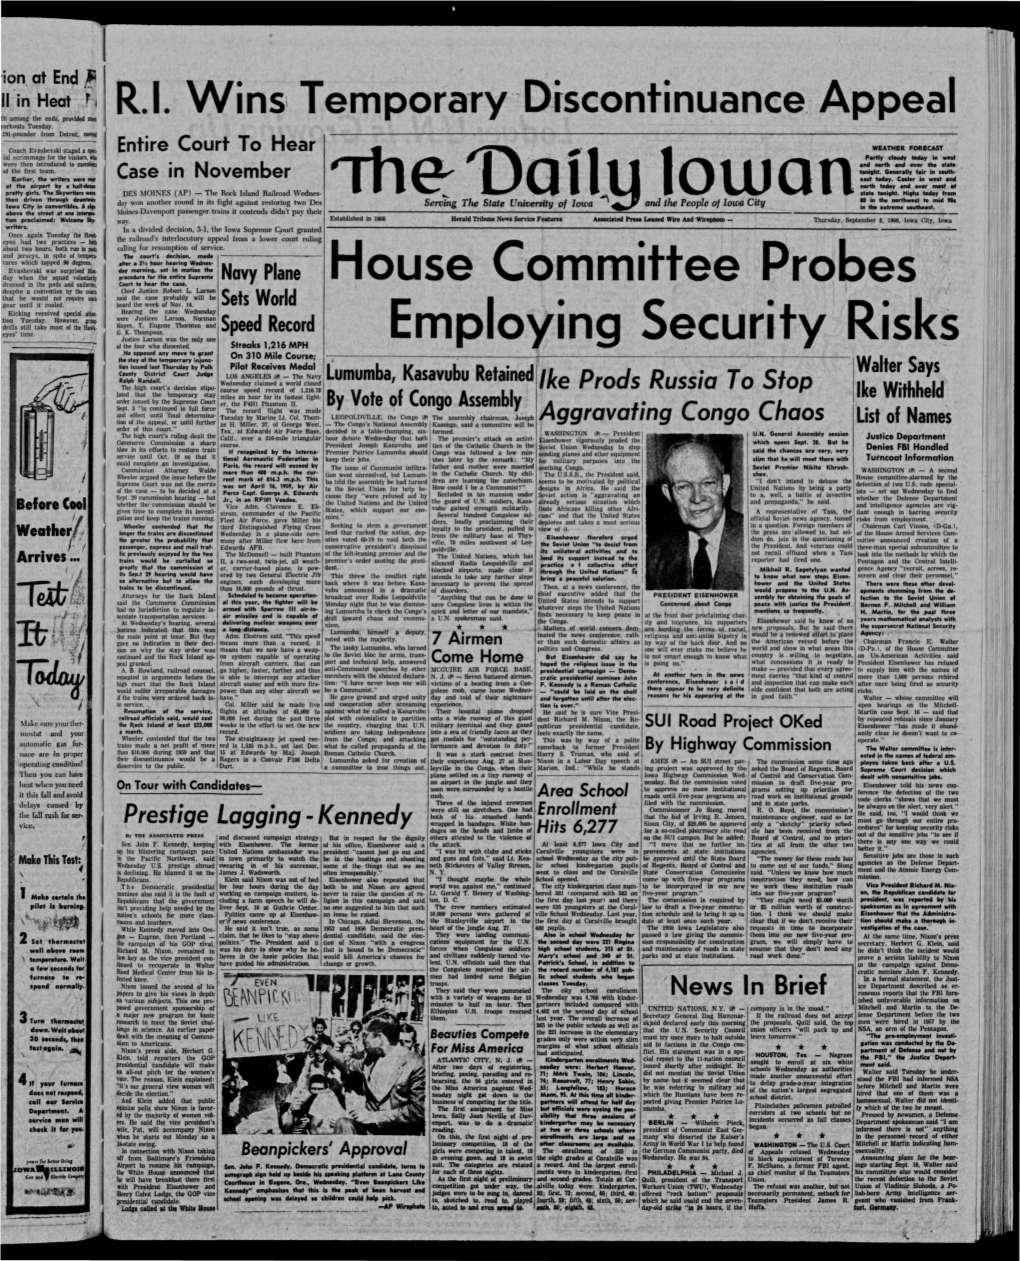 Daily Iowan (Iowa City, Iowa), 1960-09-08